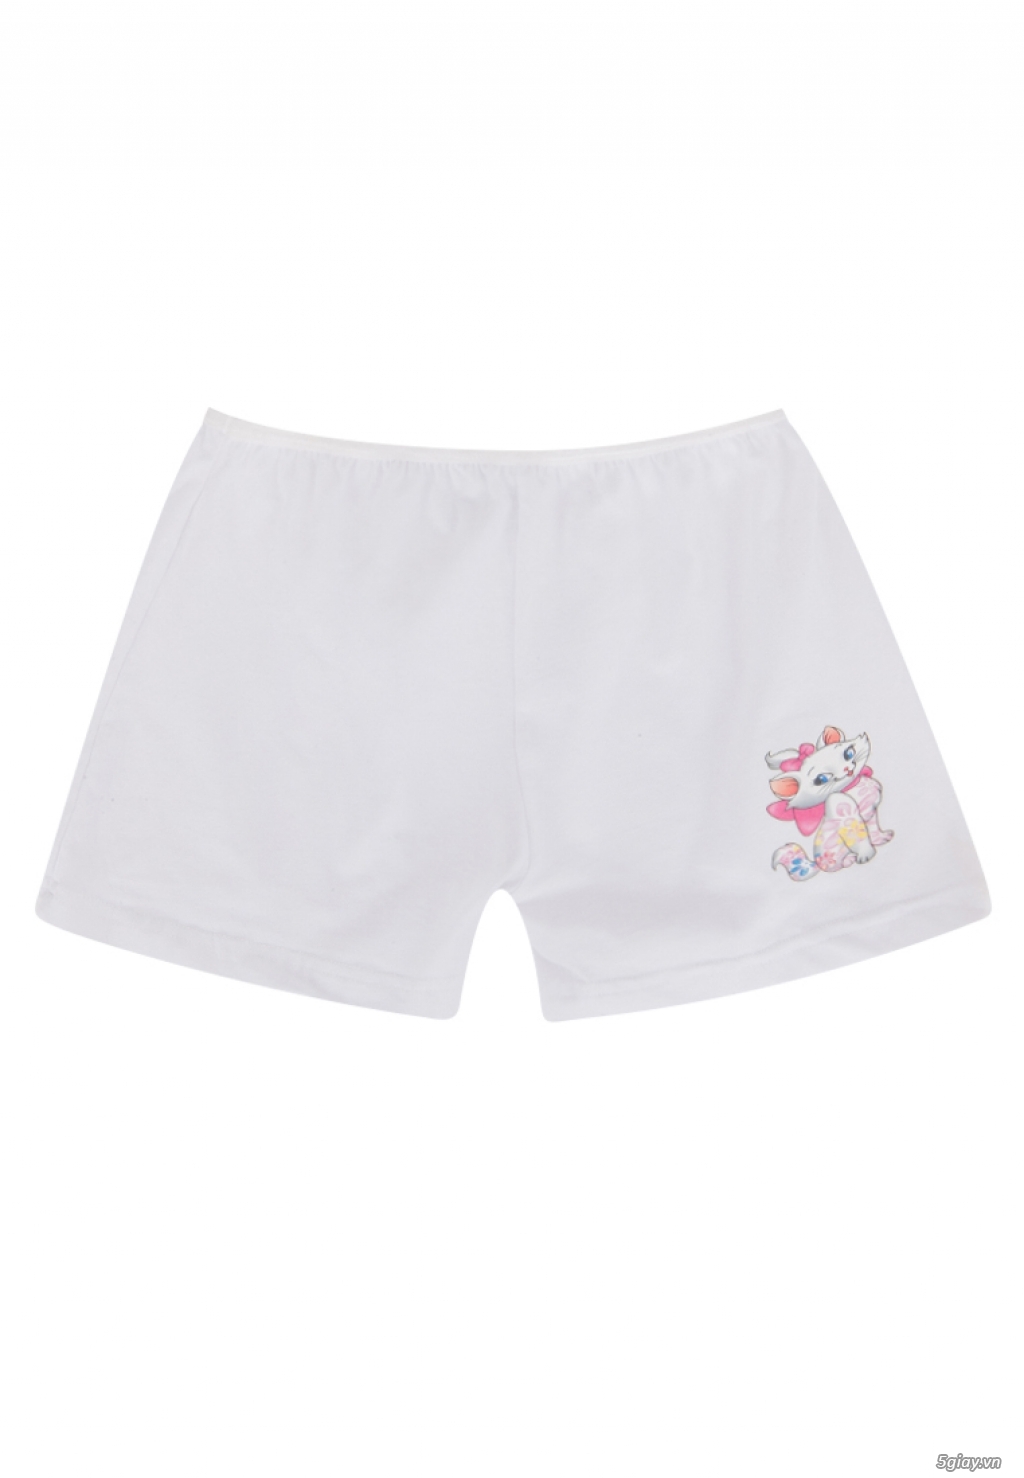 ' Toàn Quốc-' Lotbe - Chuyên cung cấp quần lót trẻ em Cotton 100% Made in Vietnam. - 8